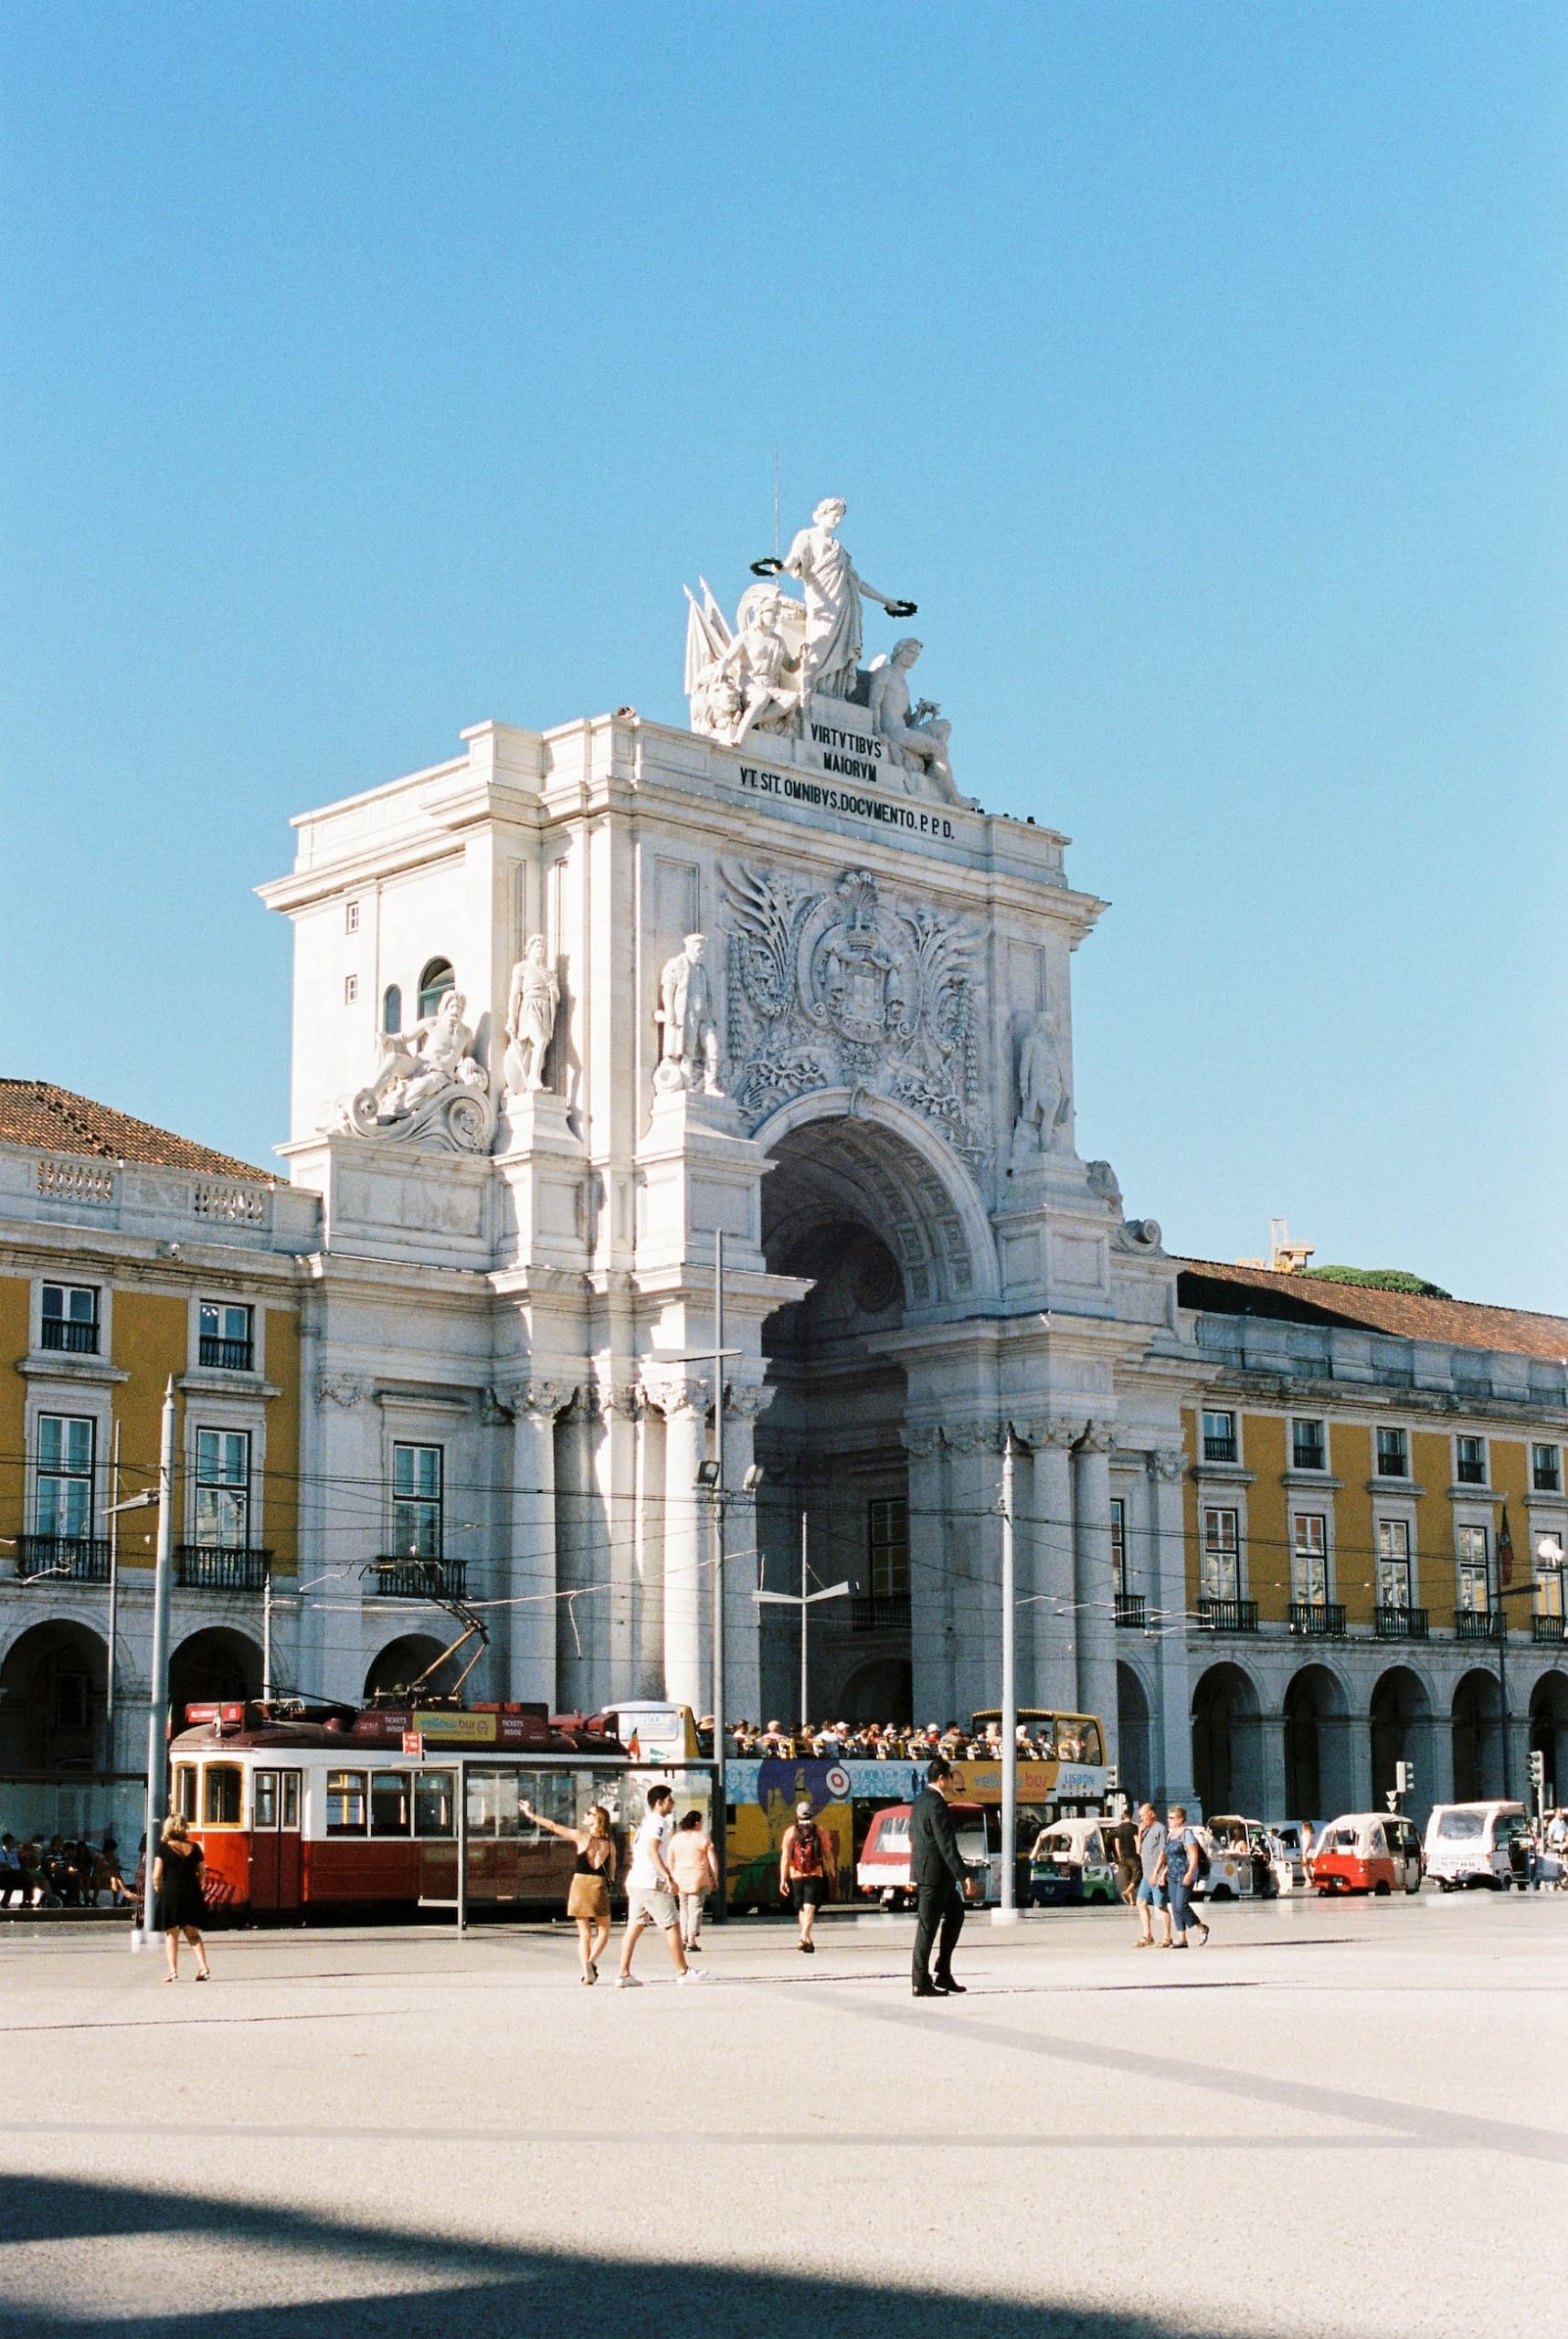 Placa do Comercio - eine der Sehenswürdigkeiten in Lissabon